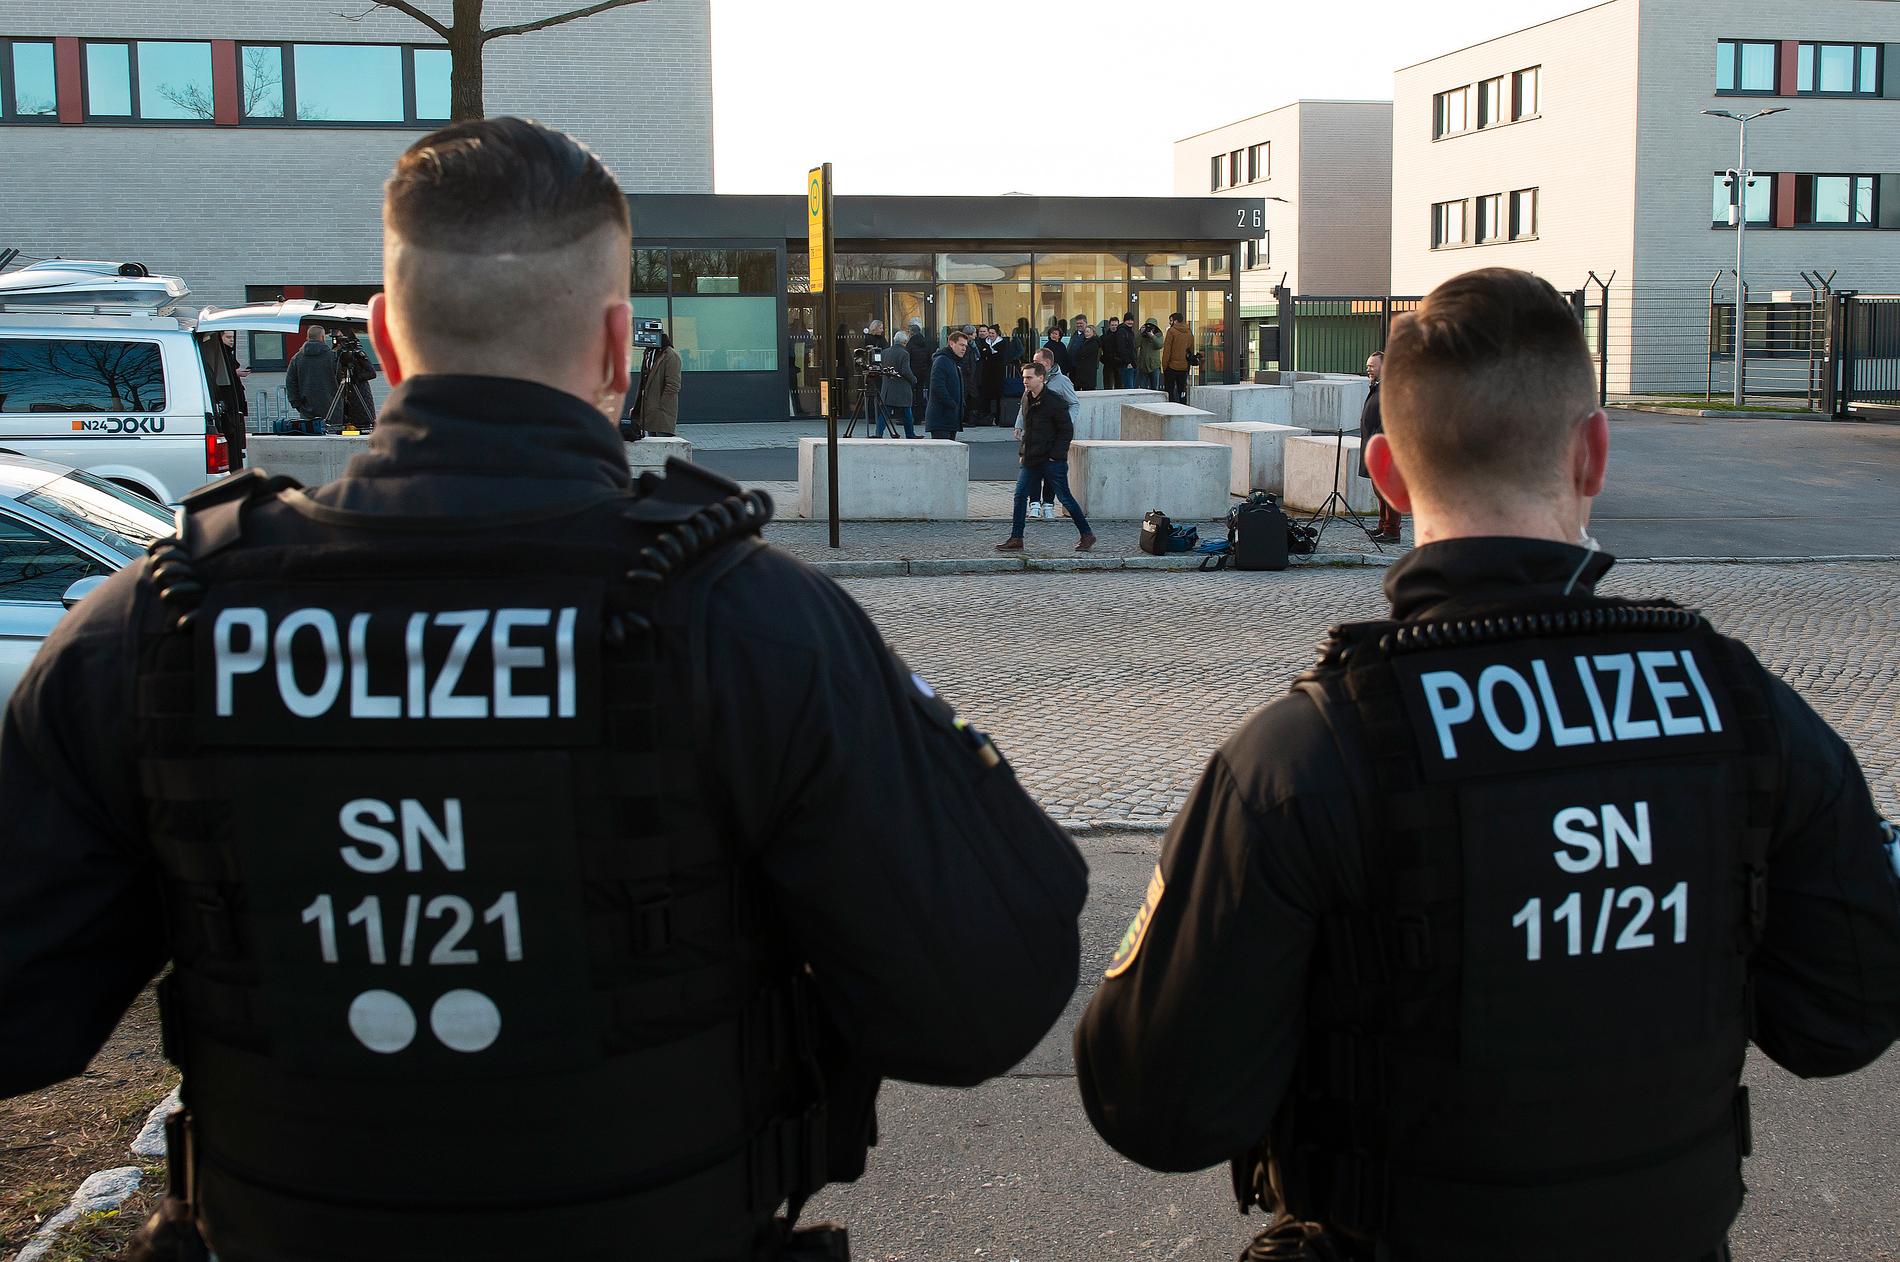 Tysk polis utreder bombhot som framförts mot stadshus i flera städer. Arkivbild.